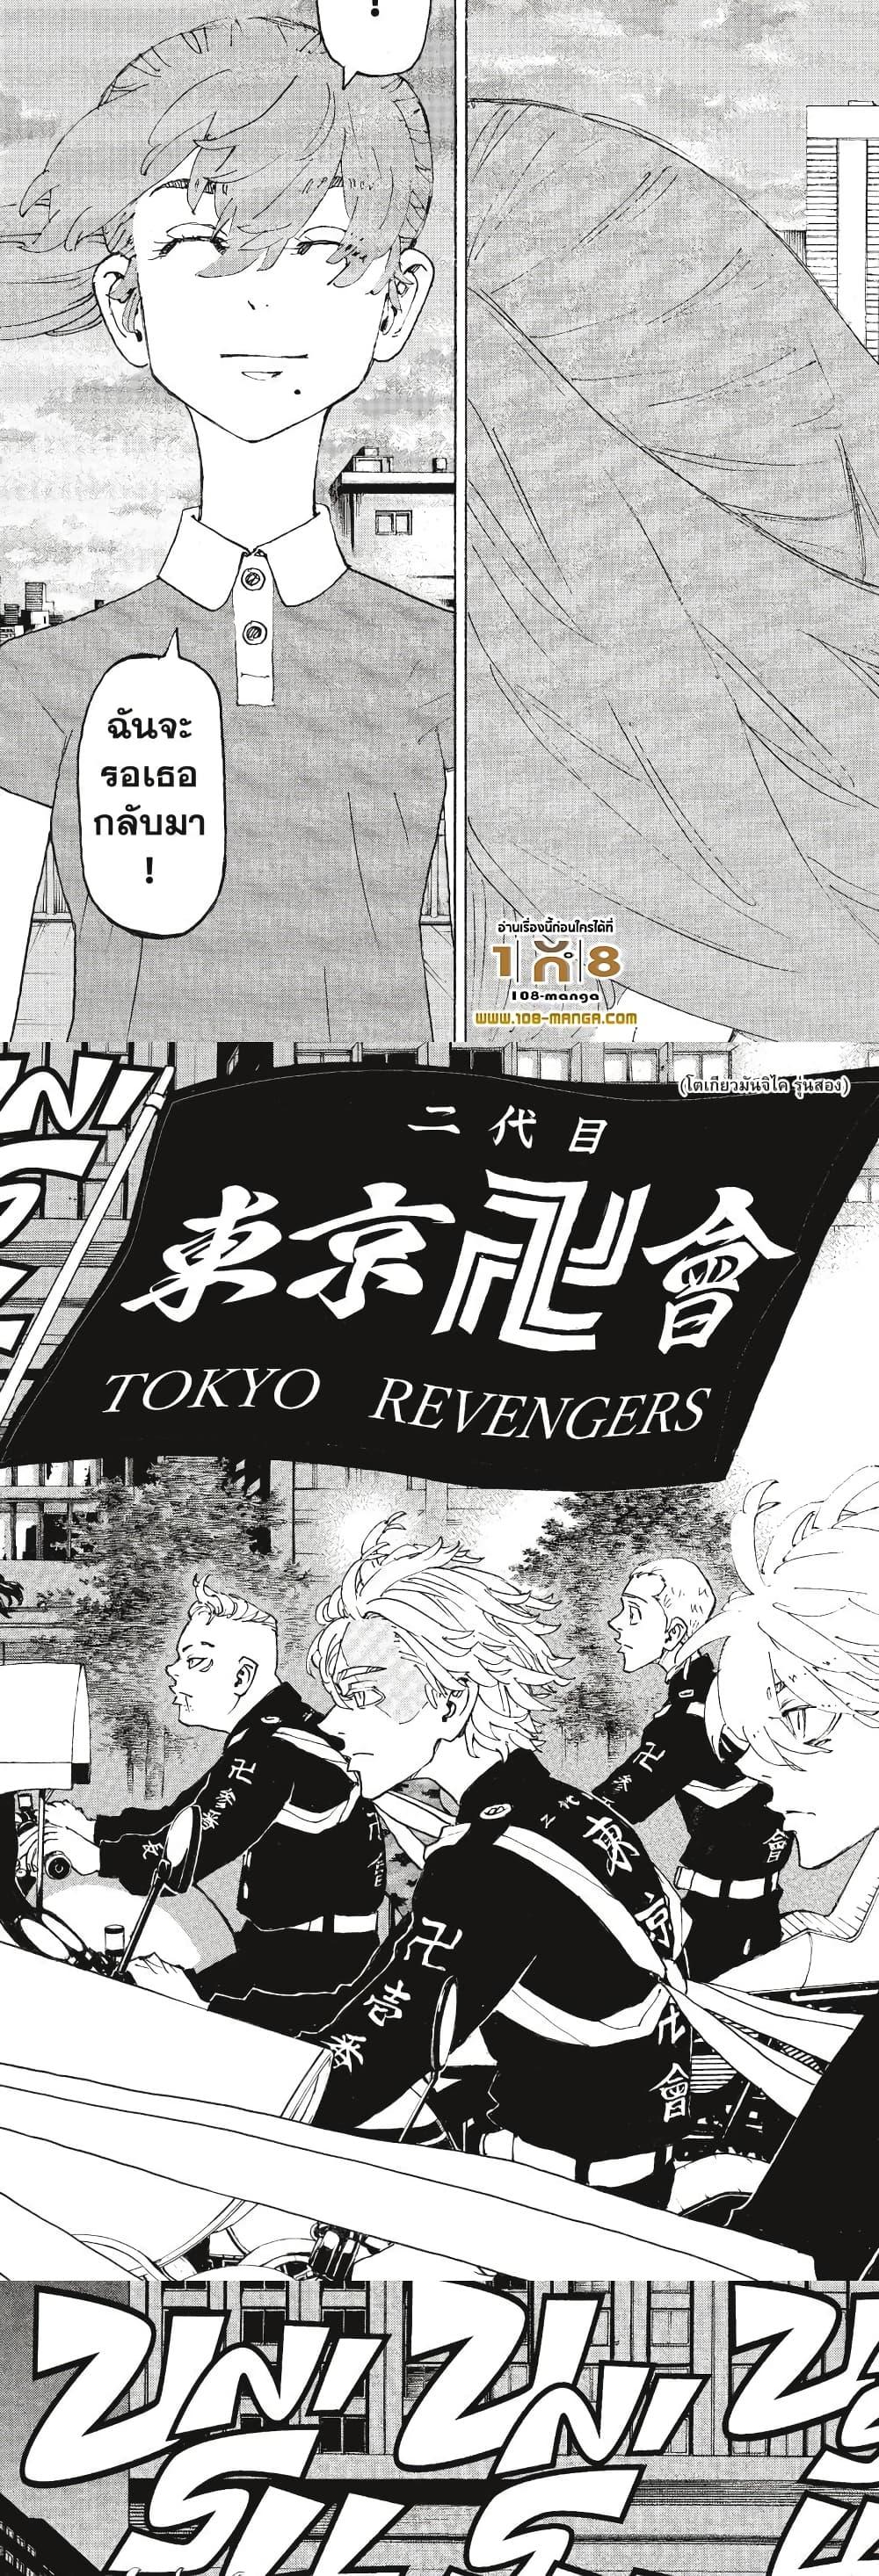 Tokyo Revengers 243 08